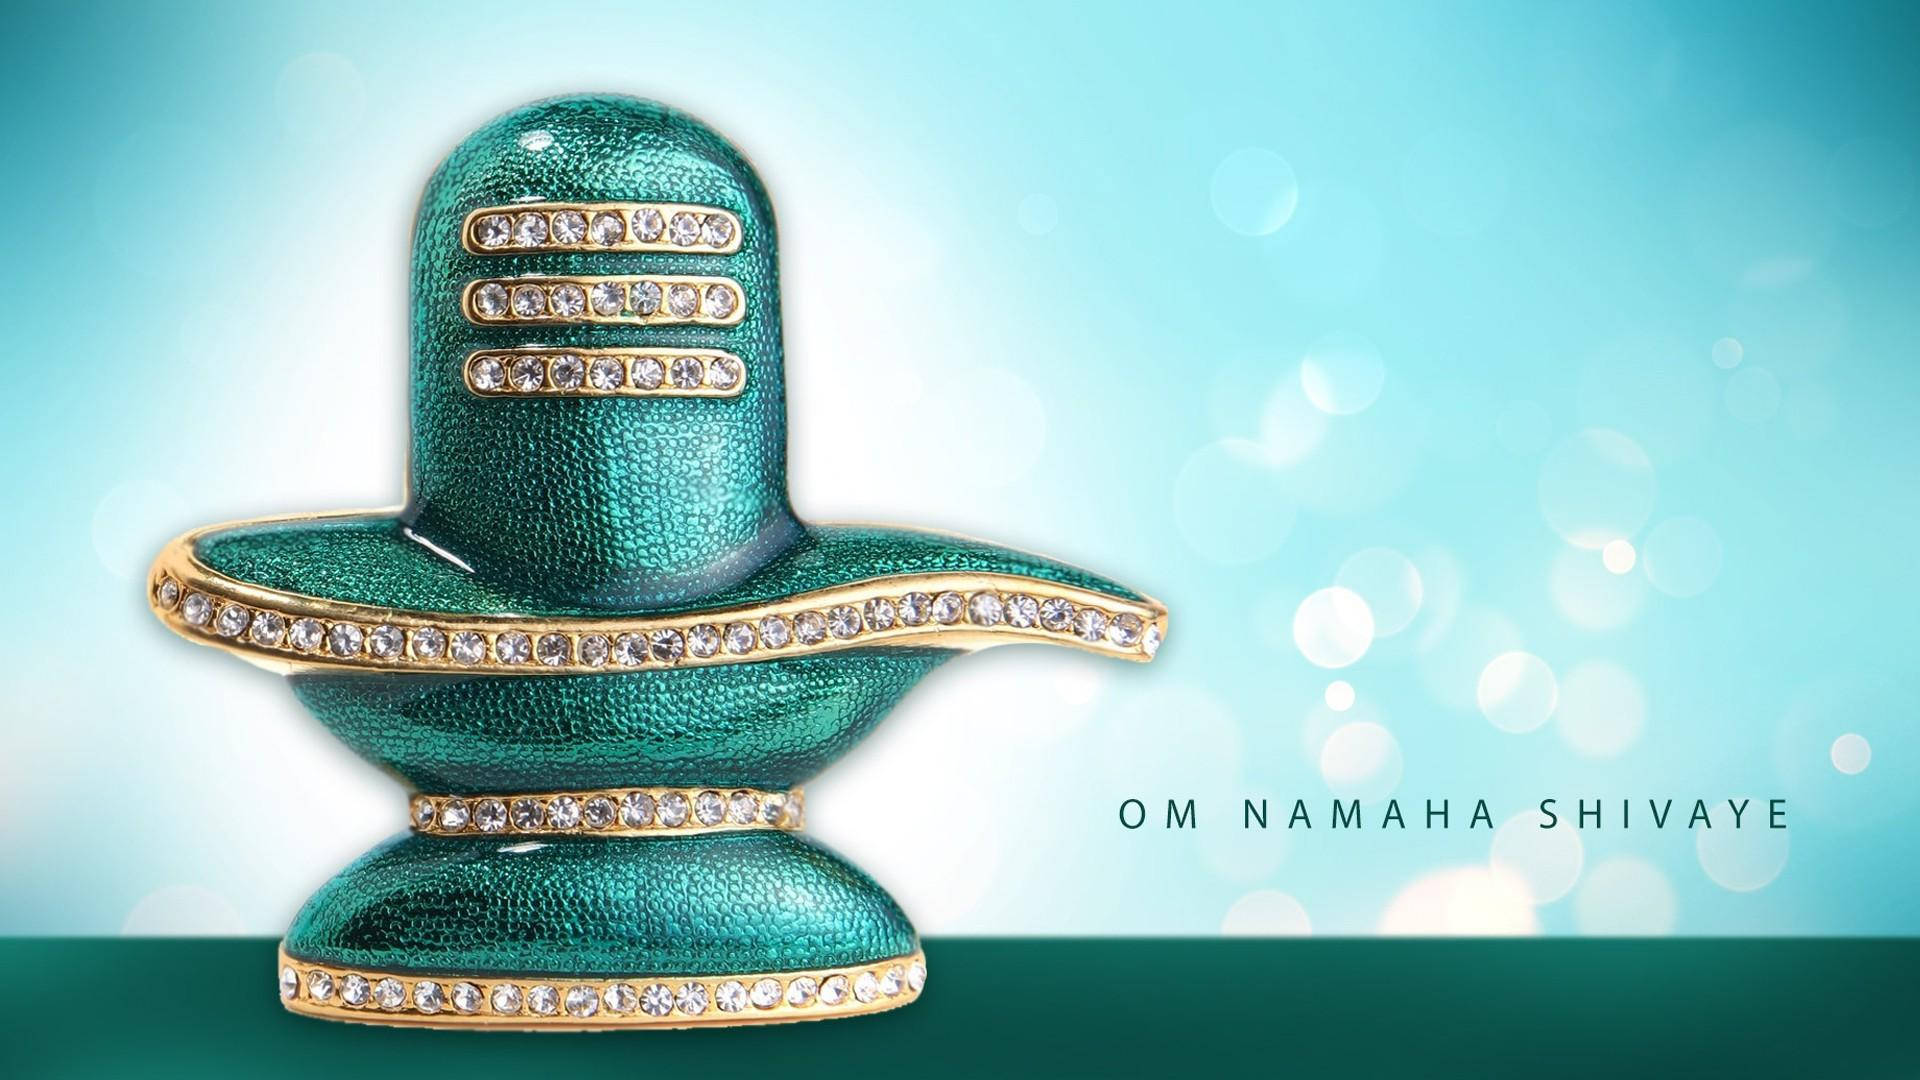 Om Namaha Shivaye Shiva Lingam Background